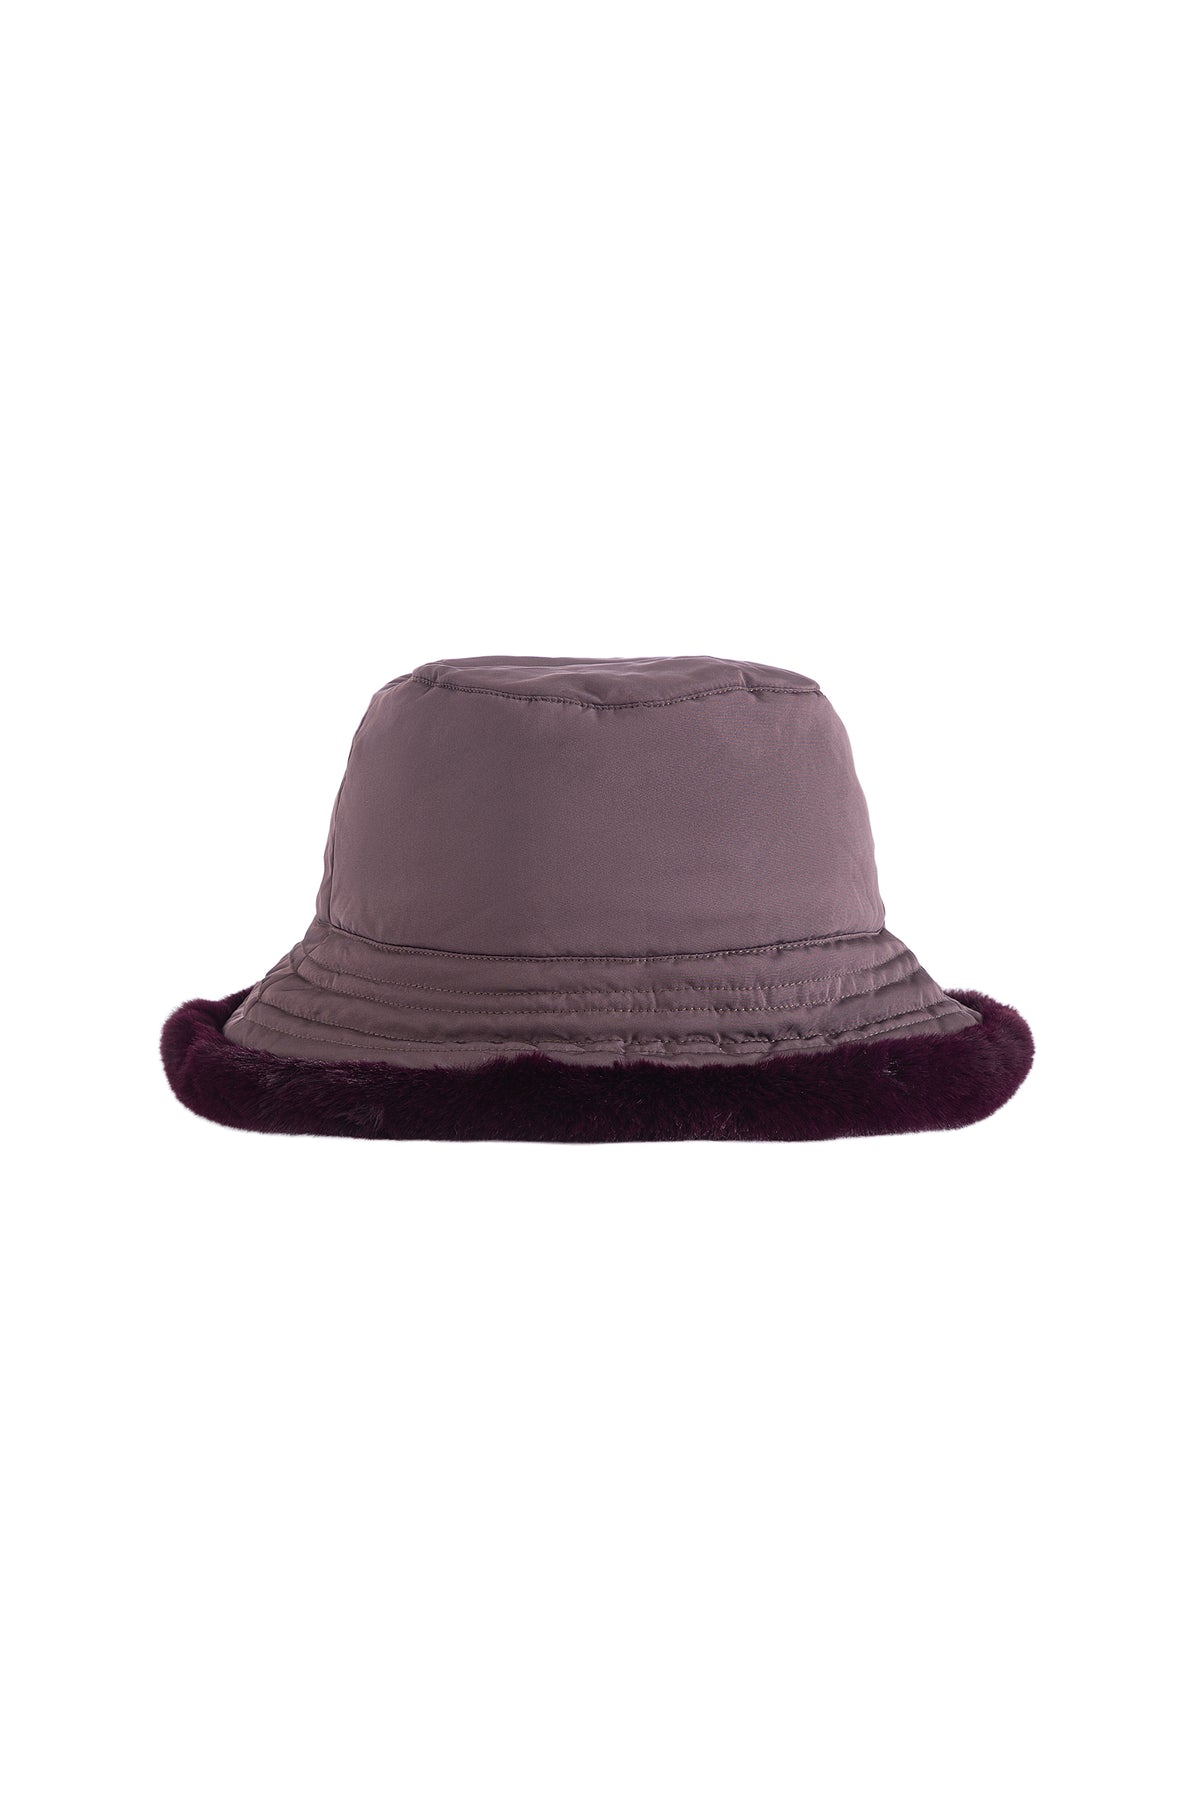 Vegancode - Reversible Bucket Hat in Raisin